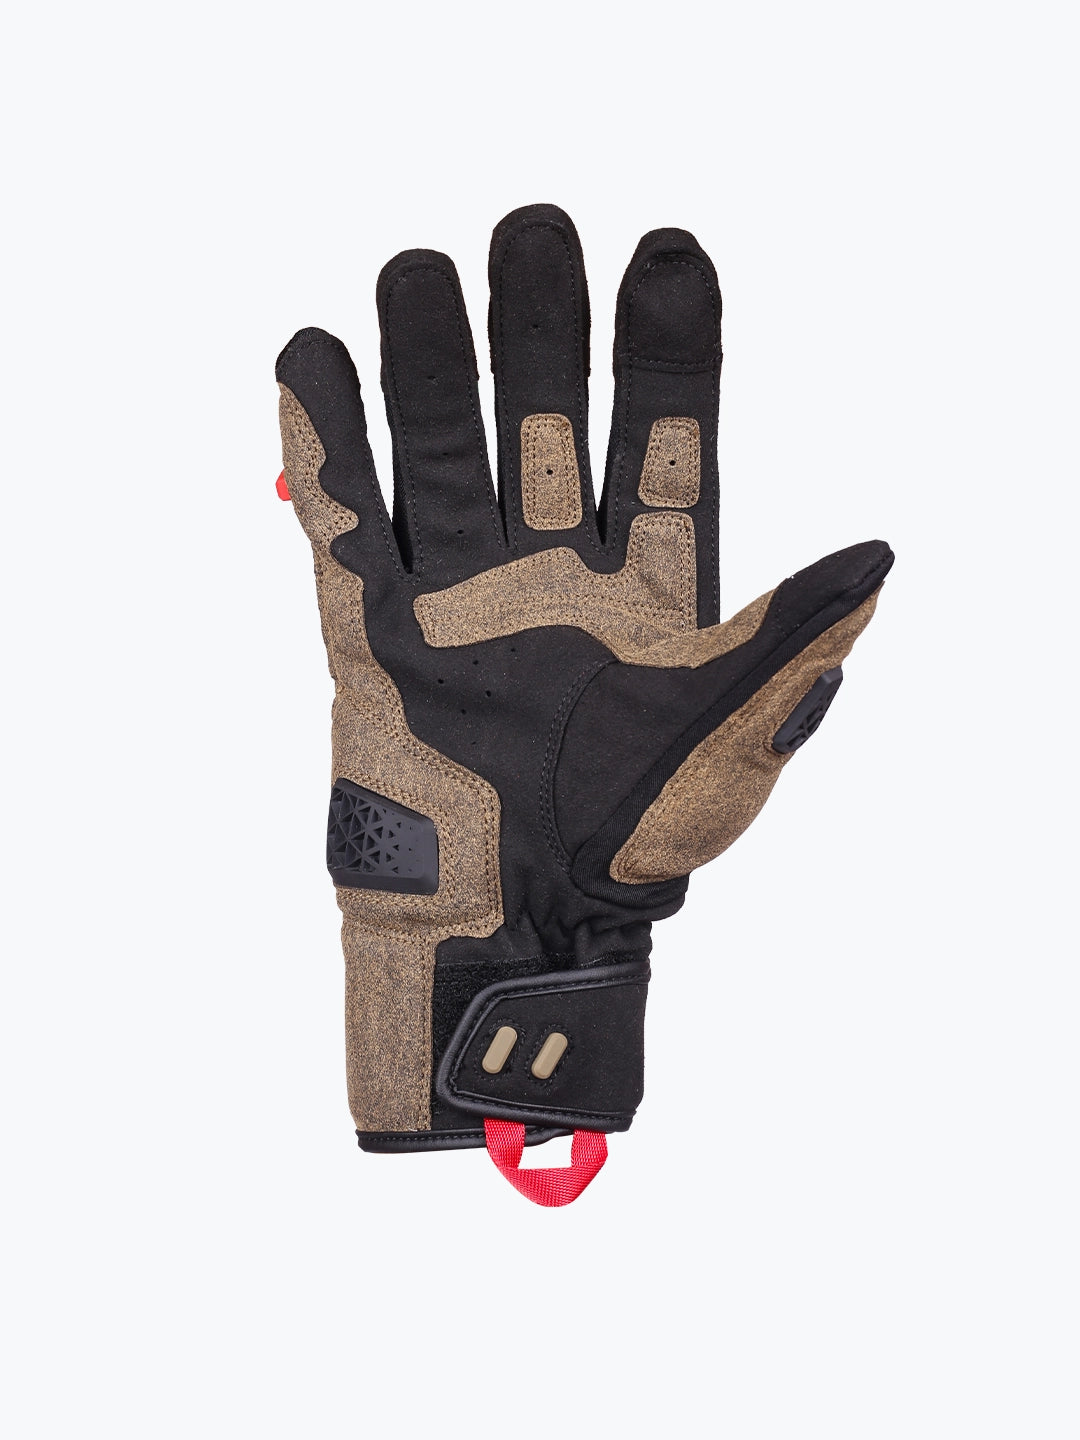 Motowolf Gloves Brown 0338